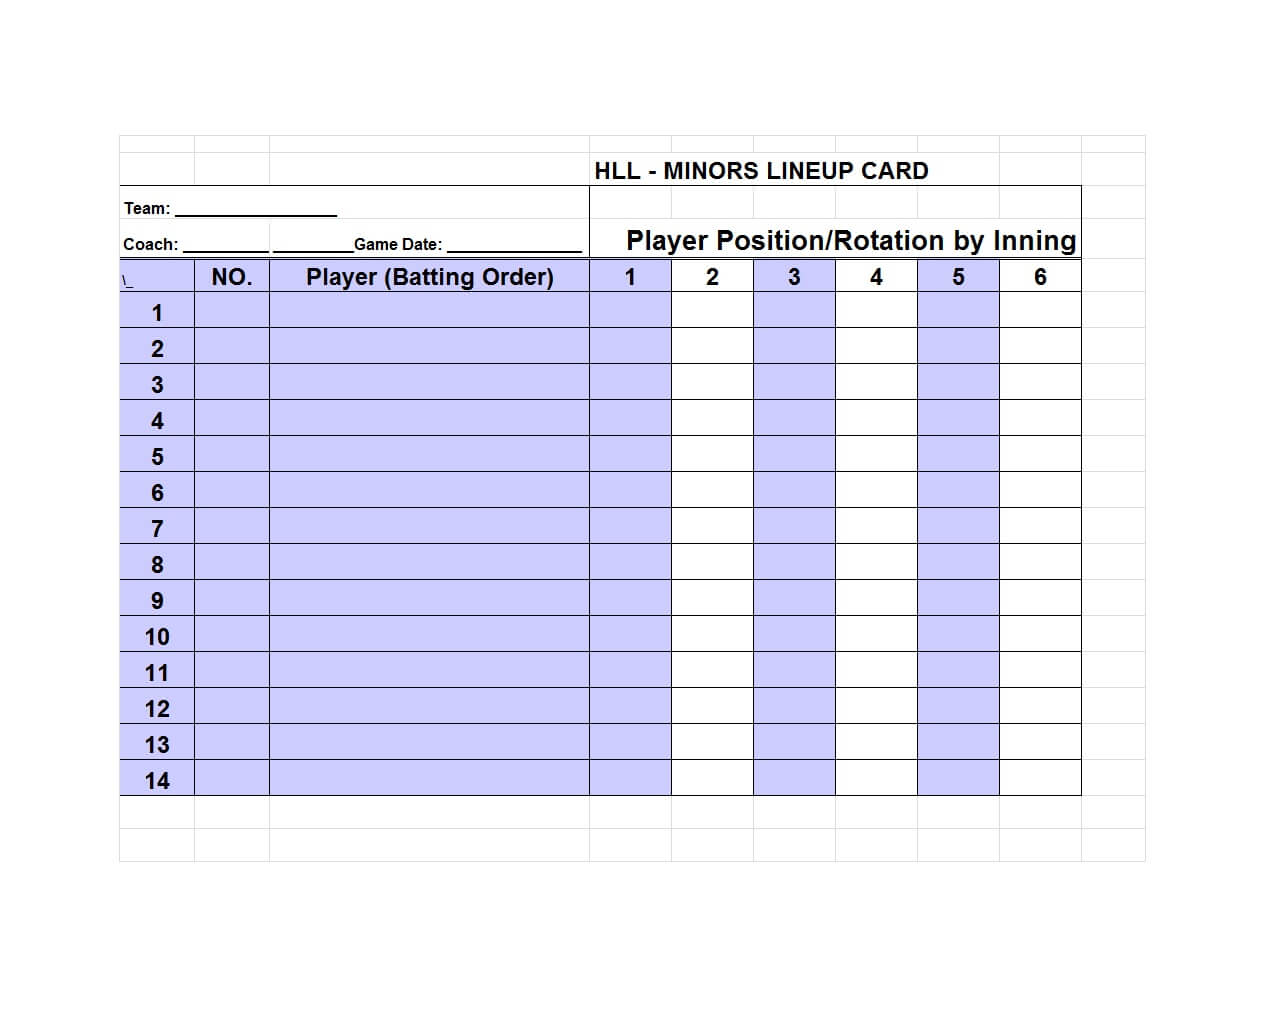 33 Printable Baseball Lineup Templates [Free Download] ᐅ For Free Baseball Lineup Card Template